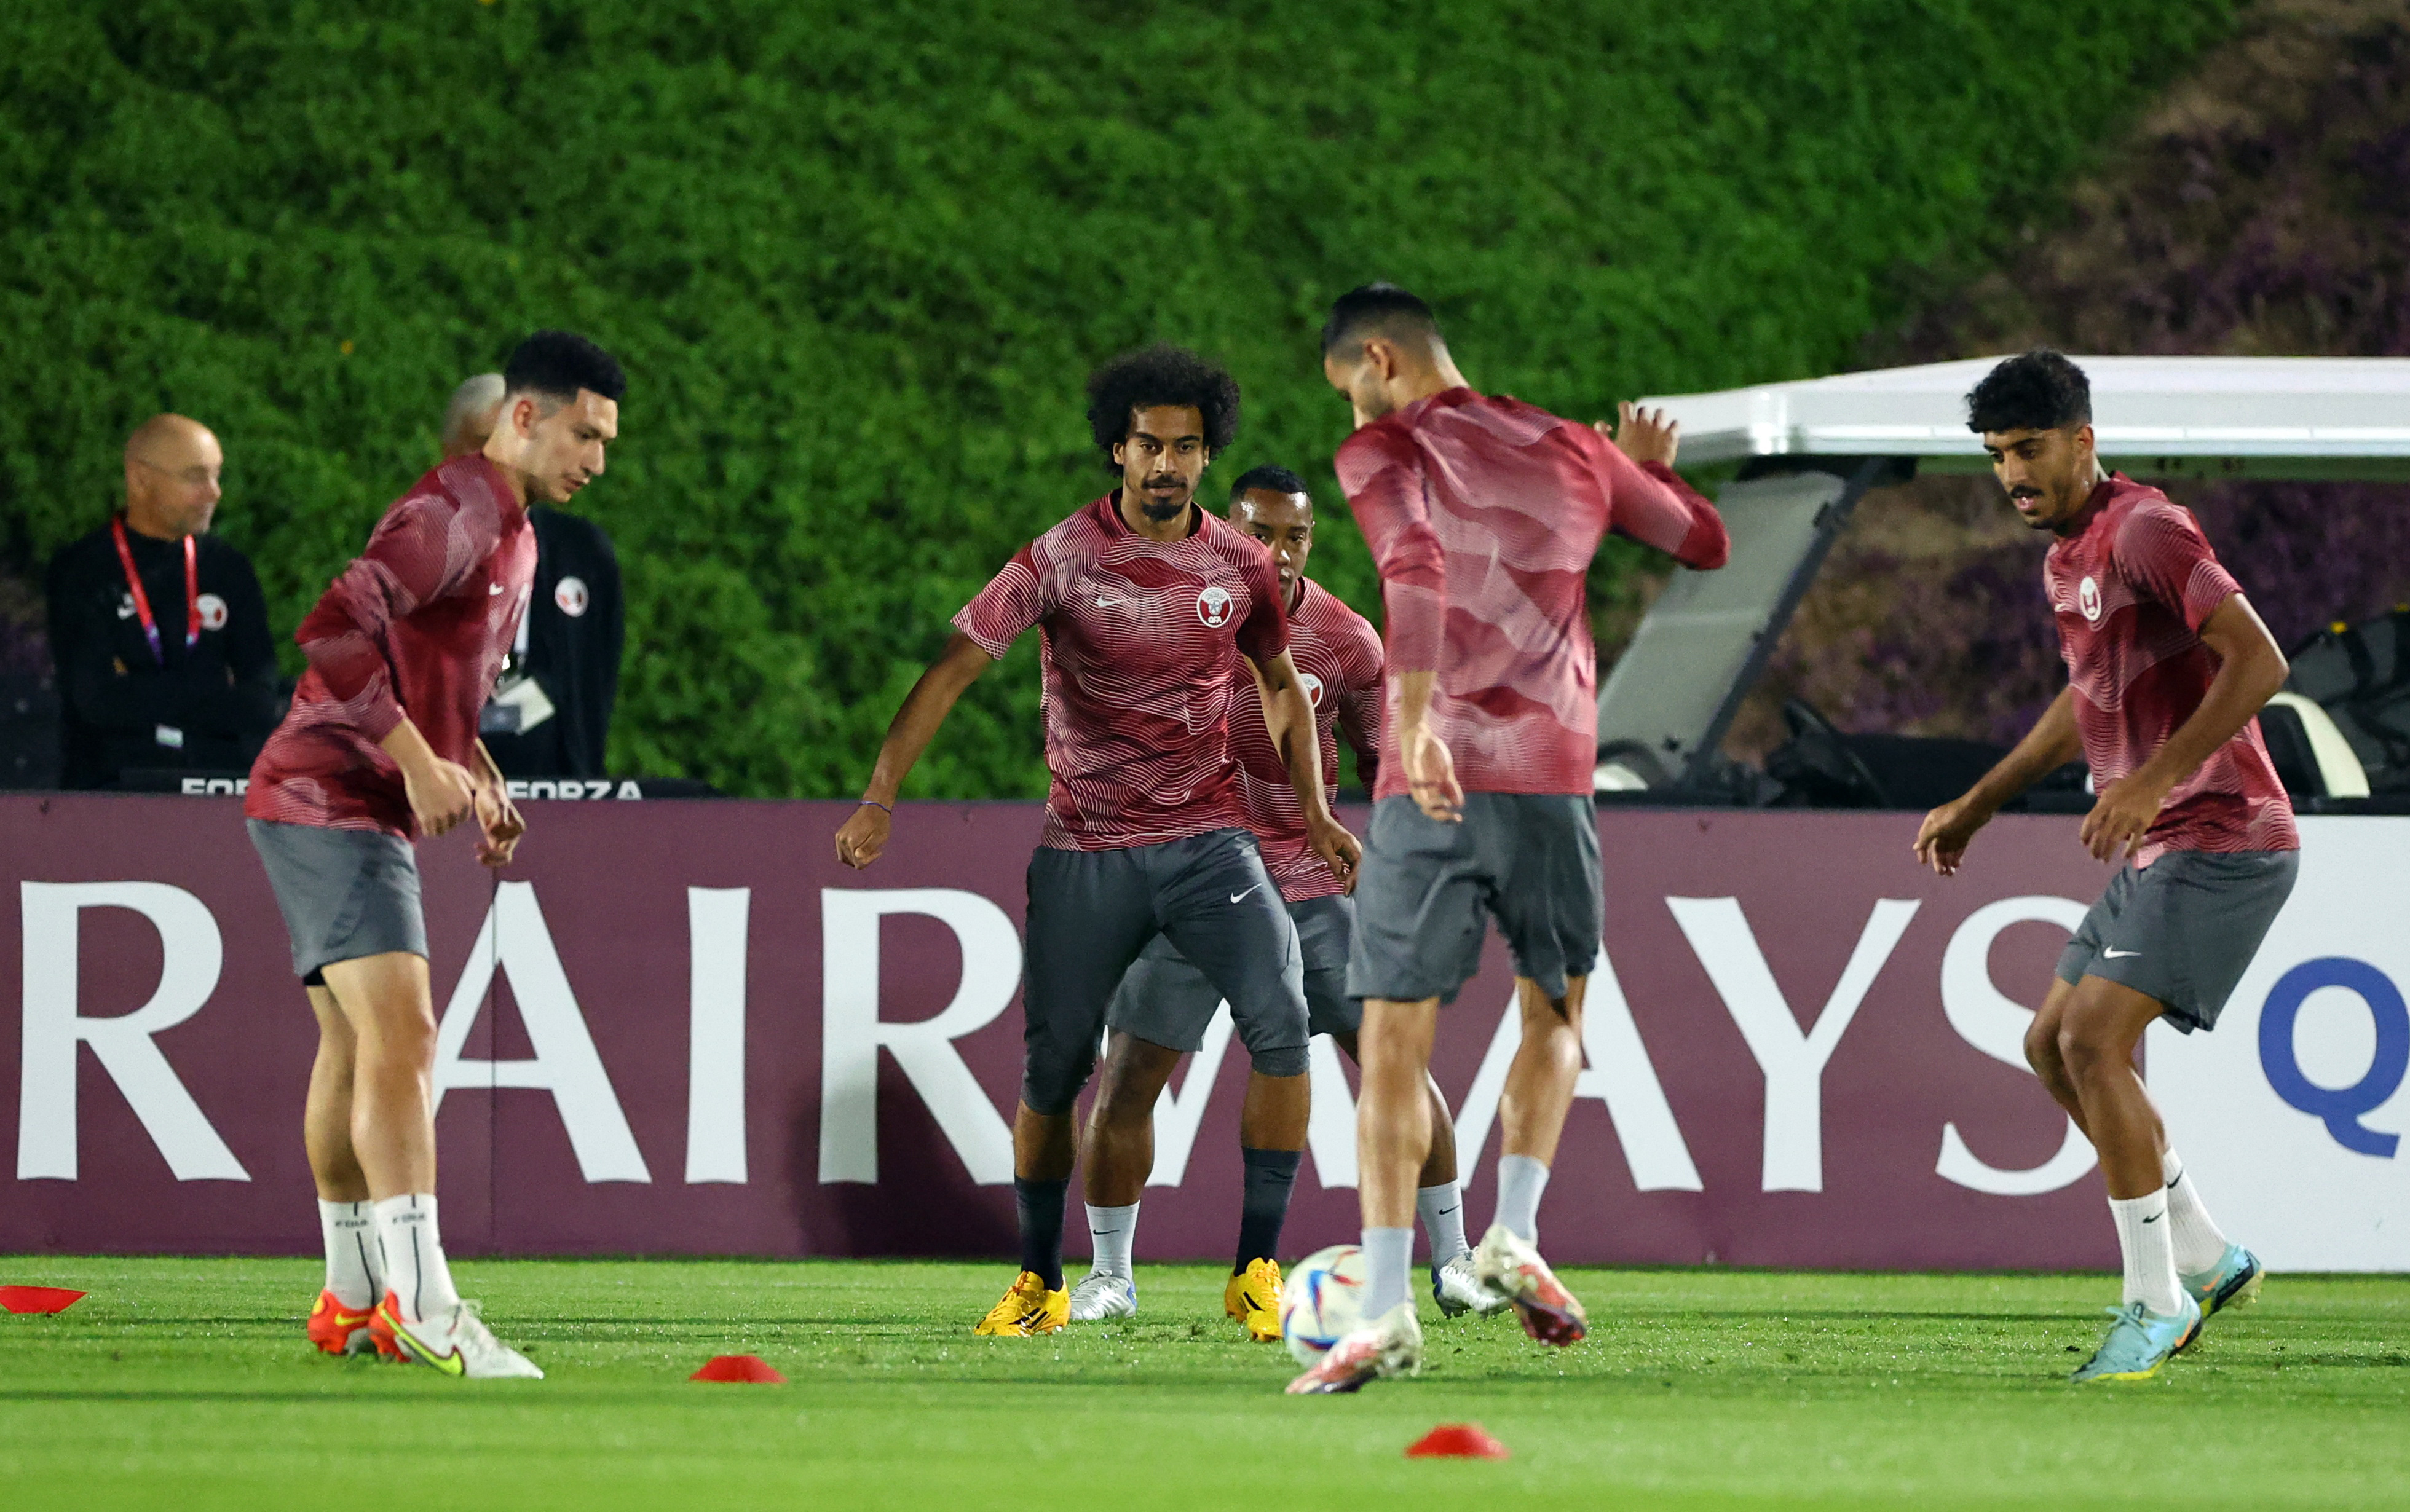 FIFA World Cup Qatar 2022 - Qatar Training